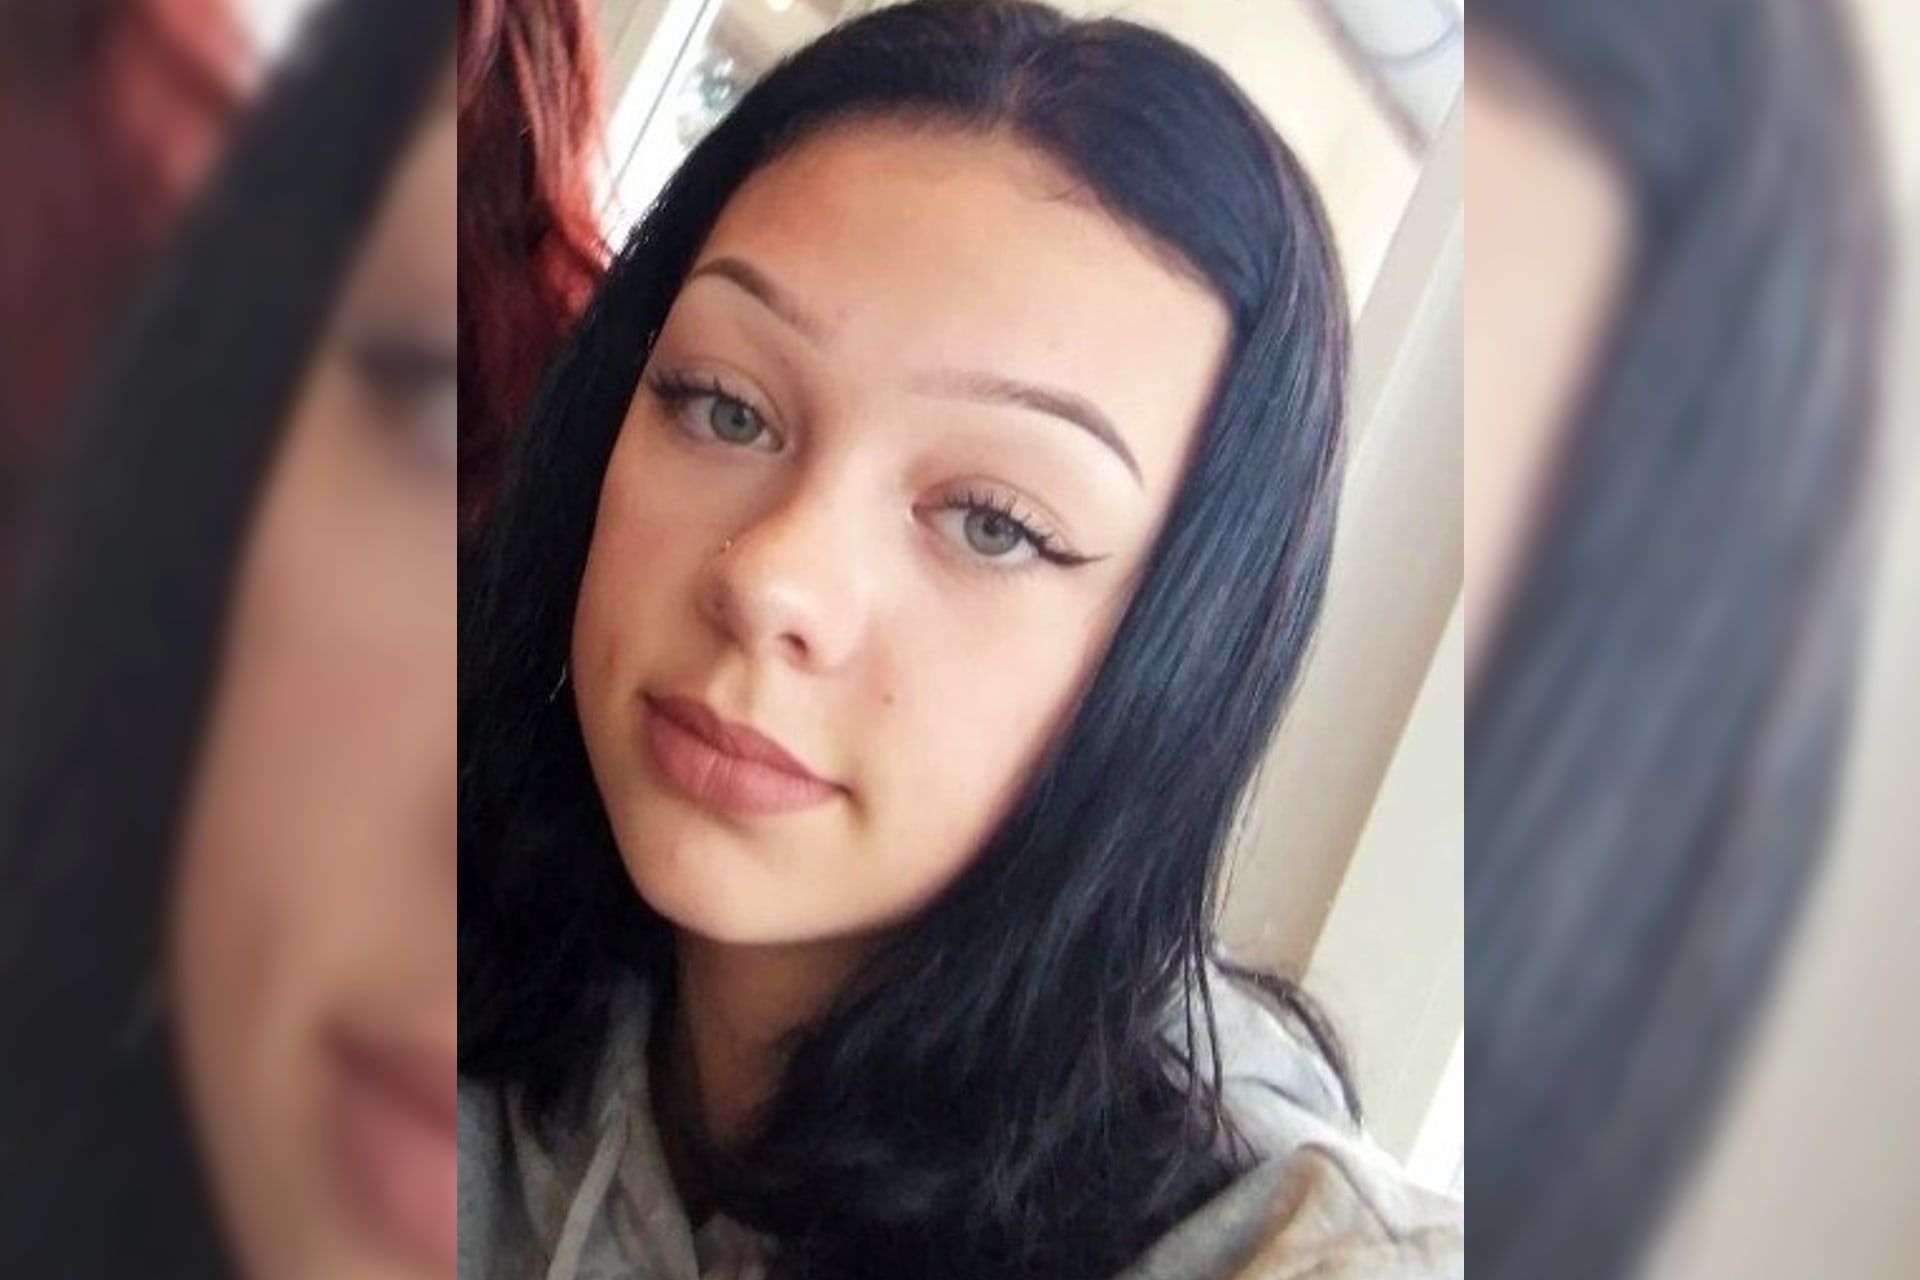 Politie en familie ongerust over vermissing Drentse Danique (16)